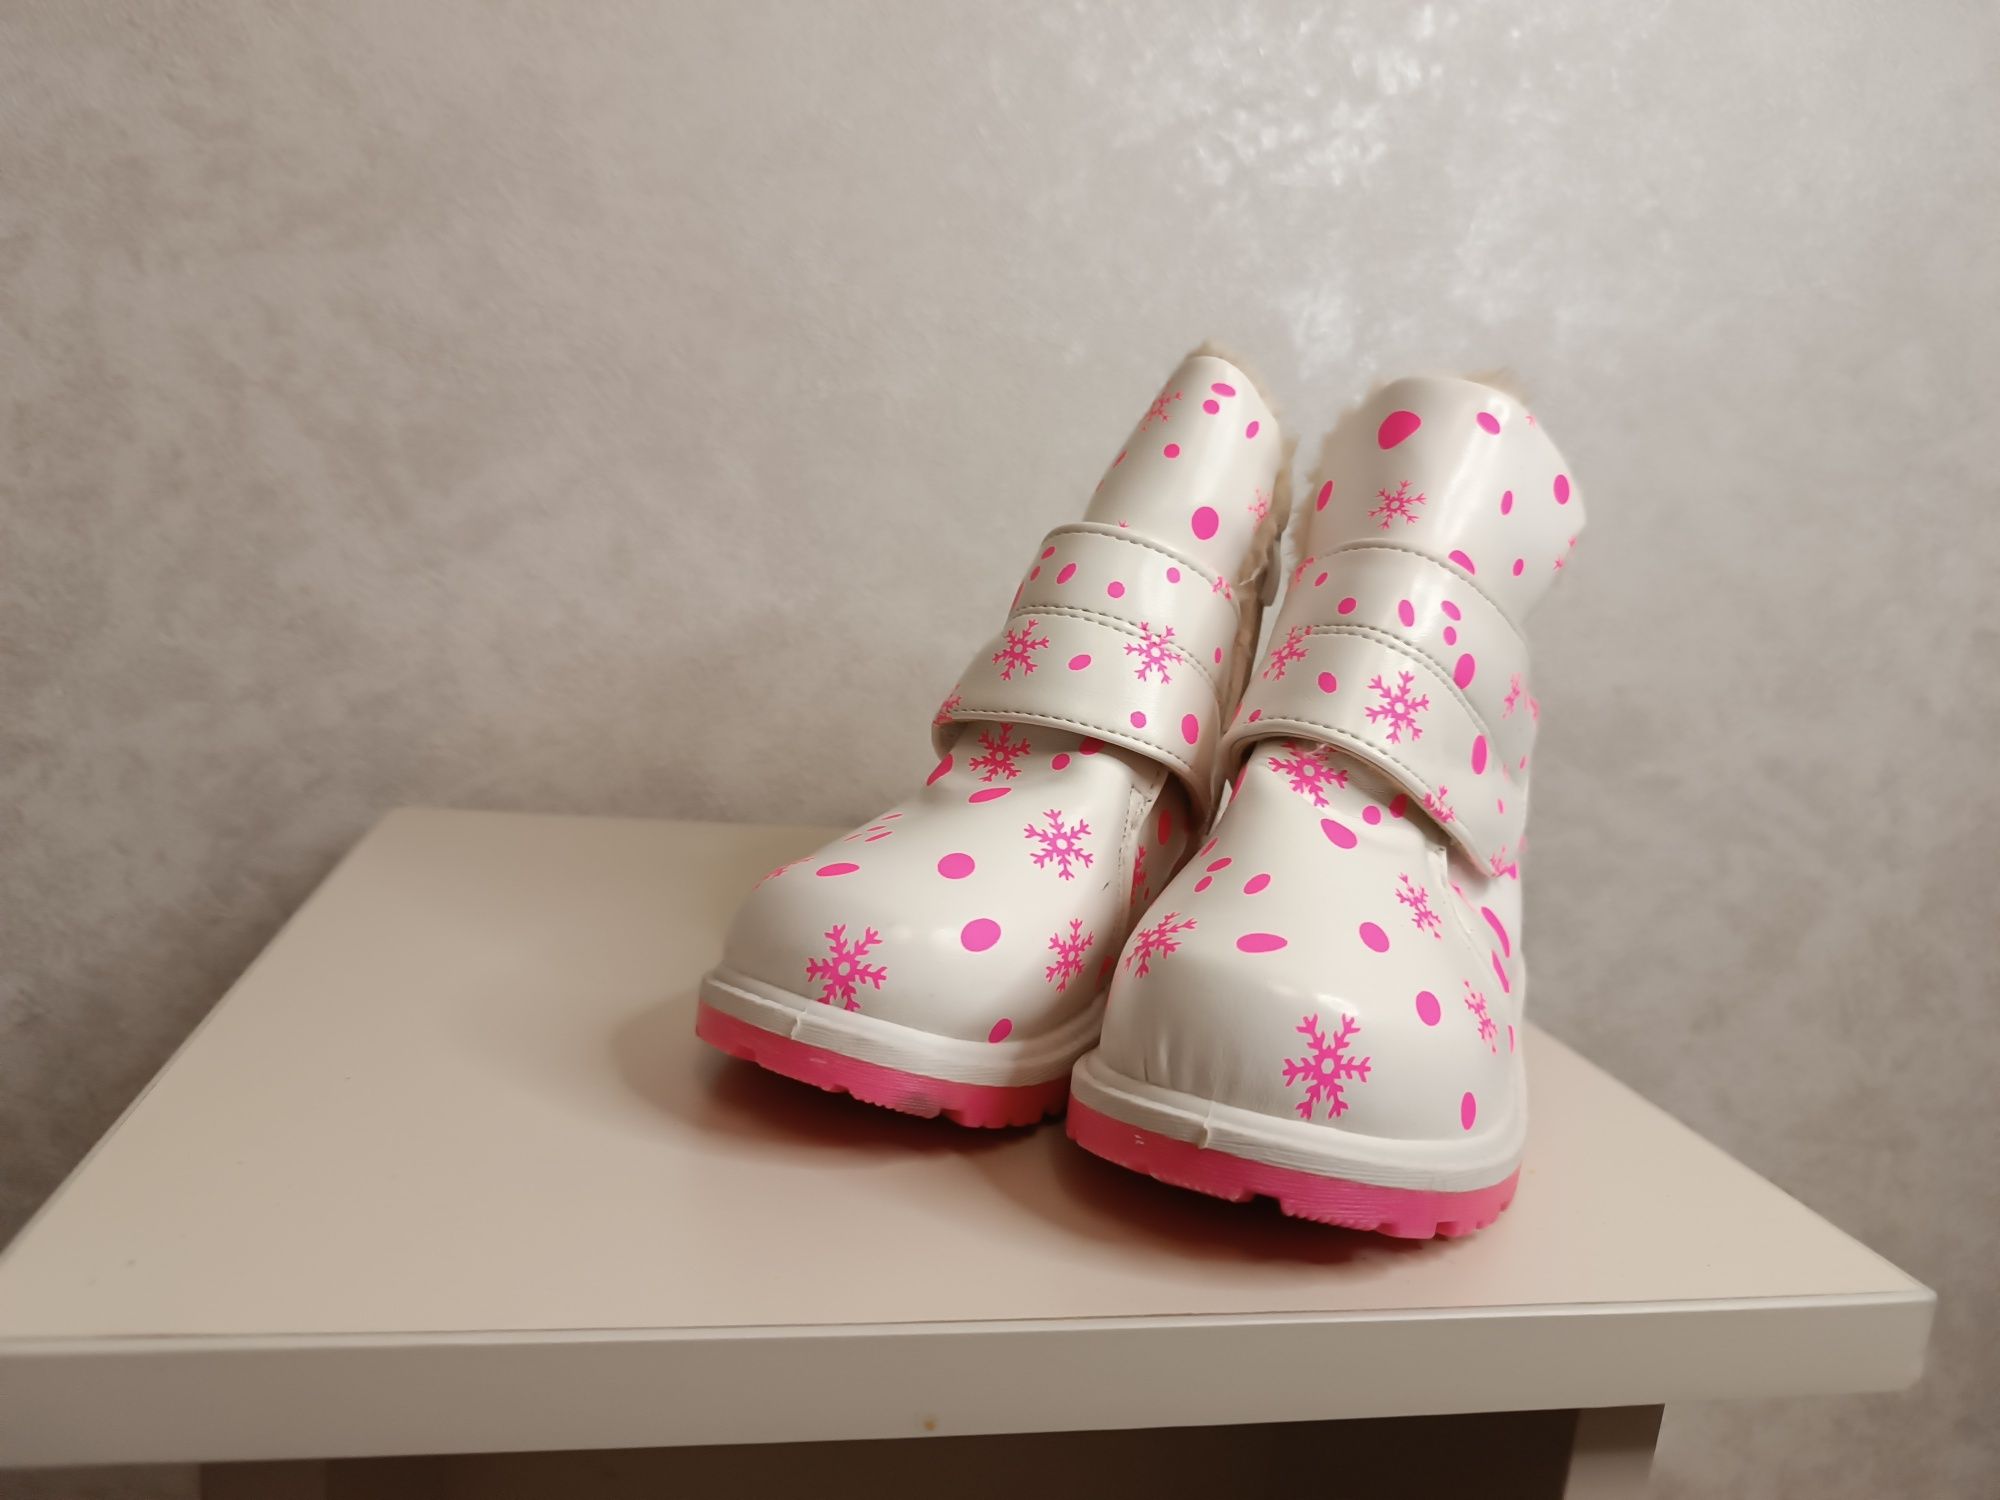 Новые ботинки сапожки утеплённые недорого детские 27-32 размеры